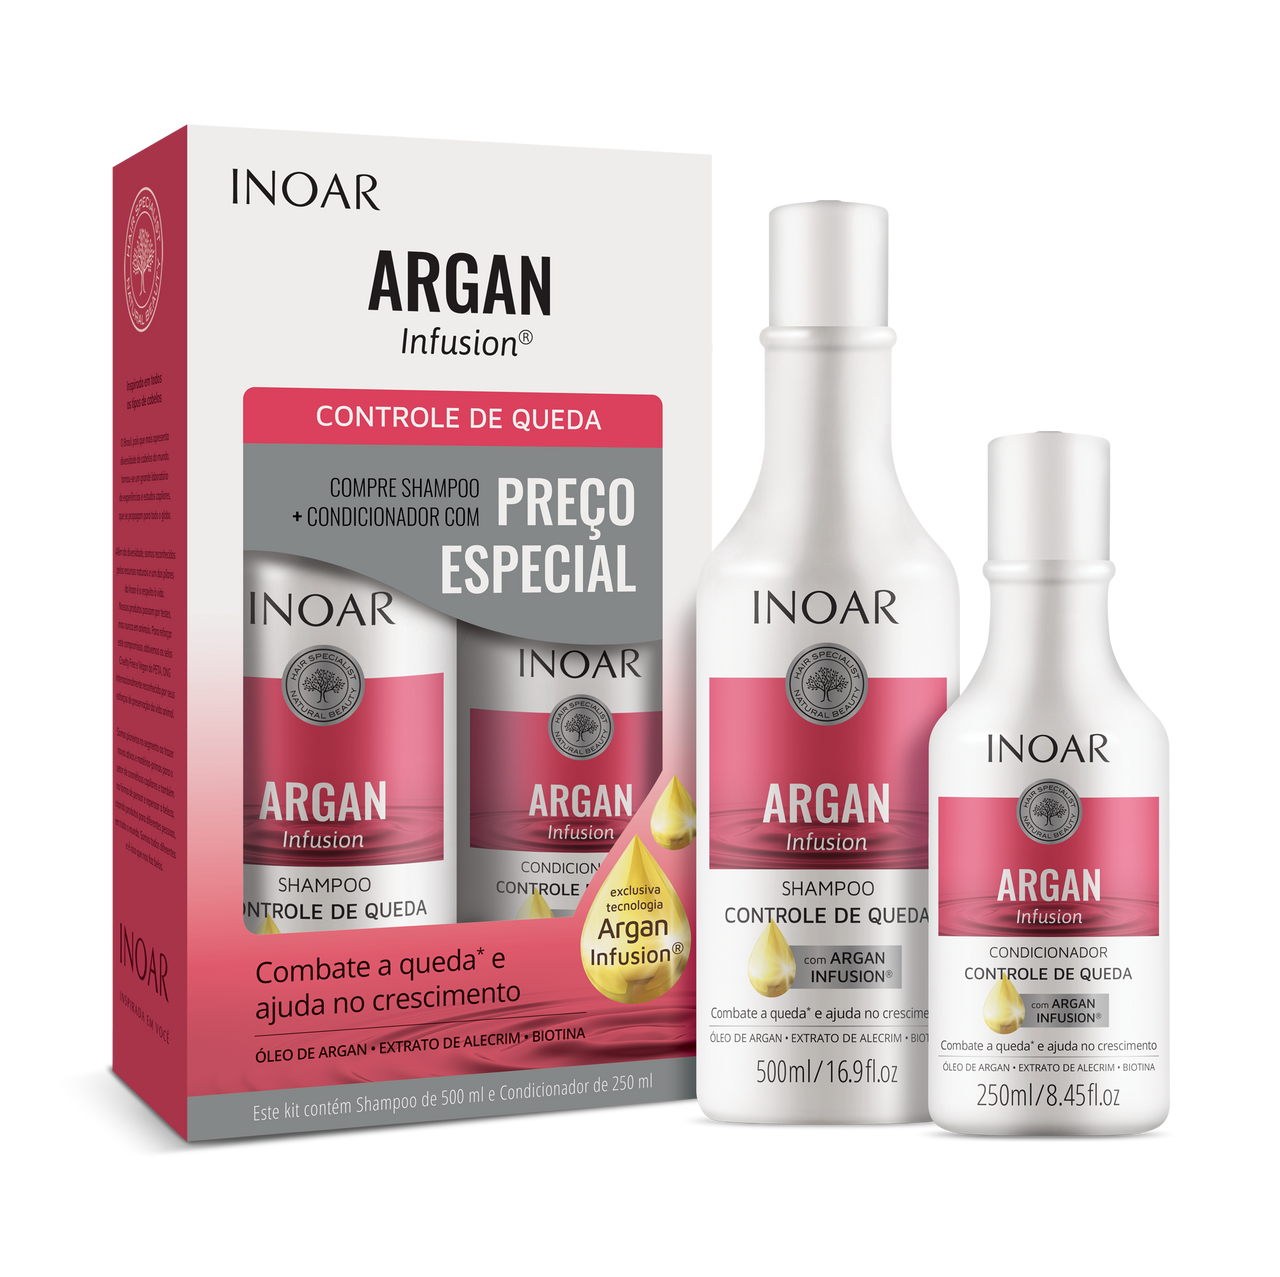 INOAR Argan Infusion Loss Control Duo Kit - priemonės stabdančios plaukų slinkimą 500 ml+250 ml